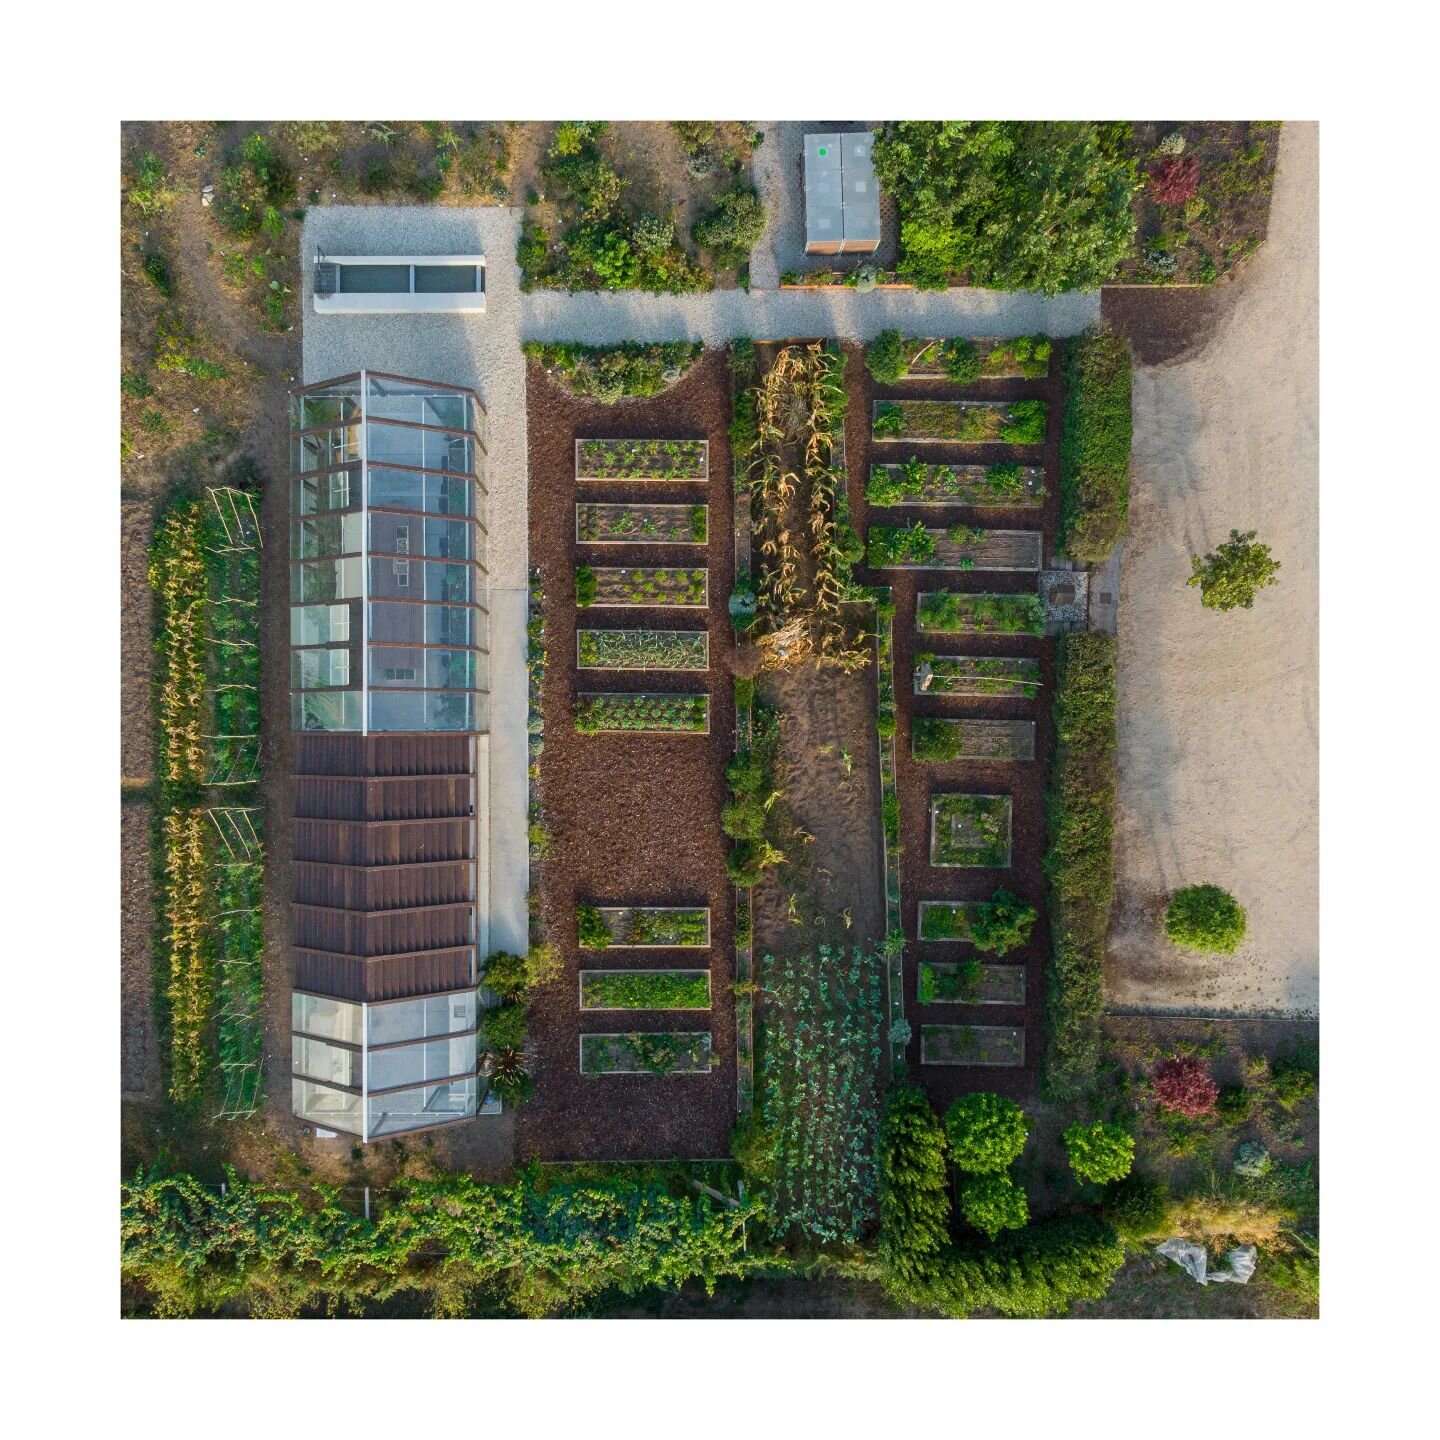 Horta e invernadoiro para o restaurante Culler de pau, O Grove, 2021
@cullerdepau 
📷 @hector_santosdiez